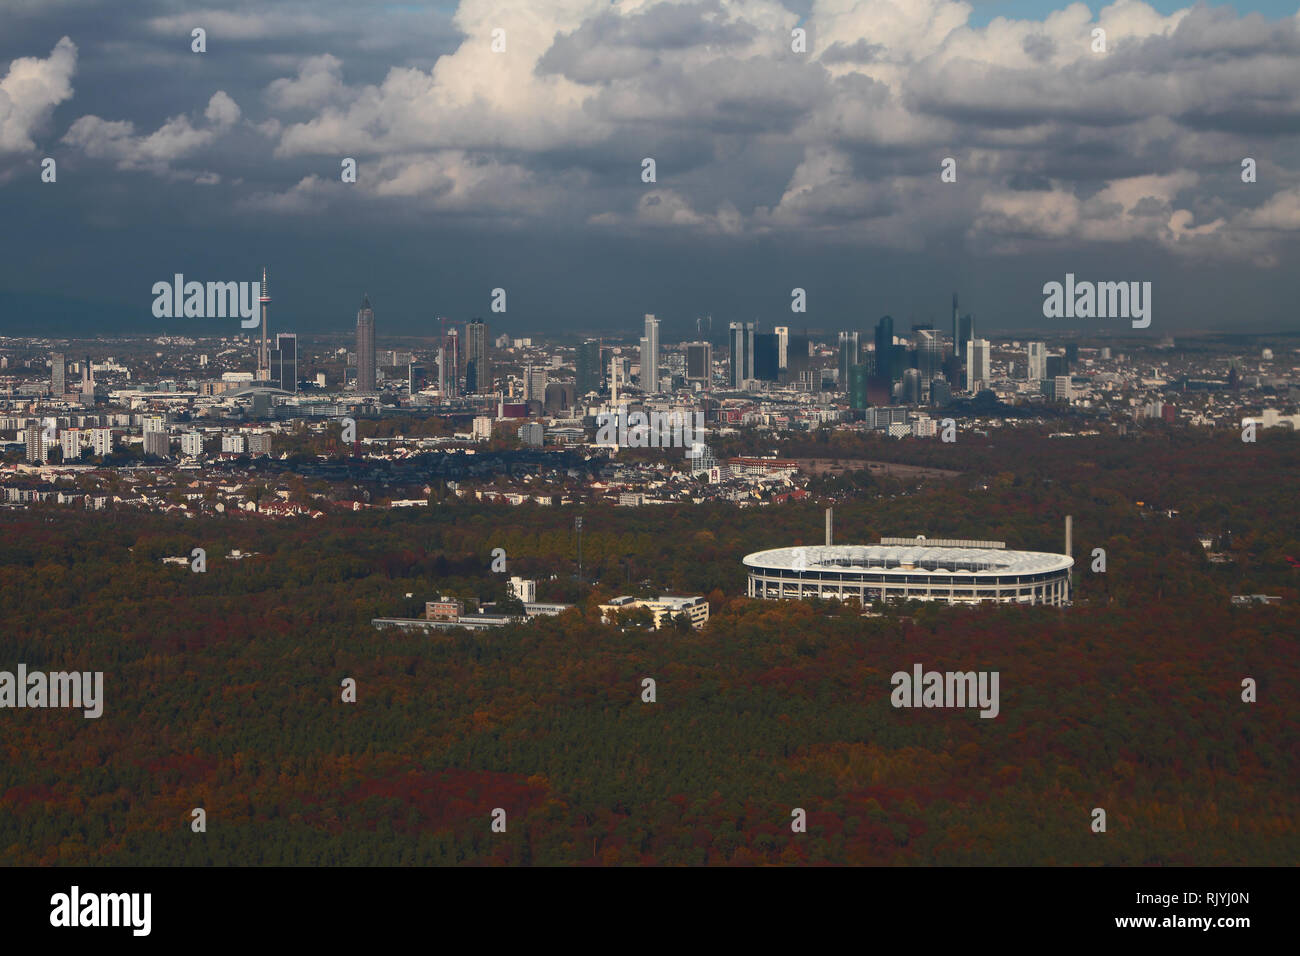 Waldgebiet, das Stadion und die Stadt, Luftbild. Frankfurt am Main, Deutschland Stockfoto